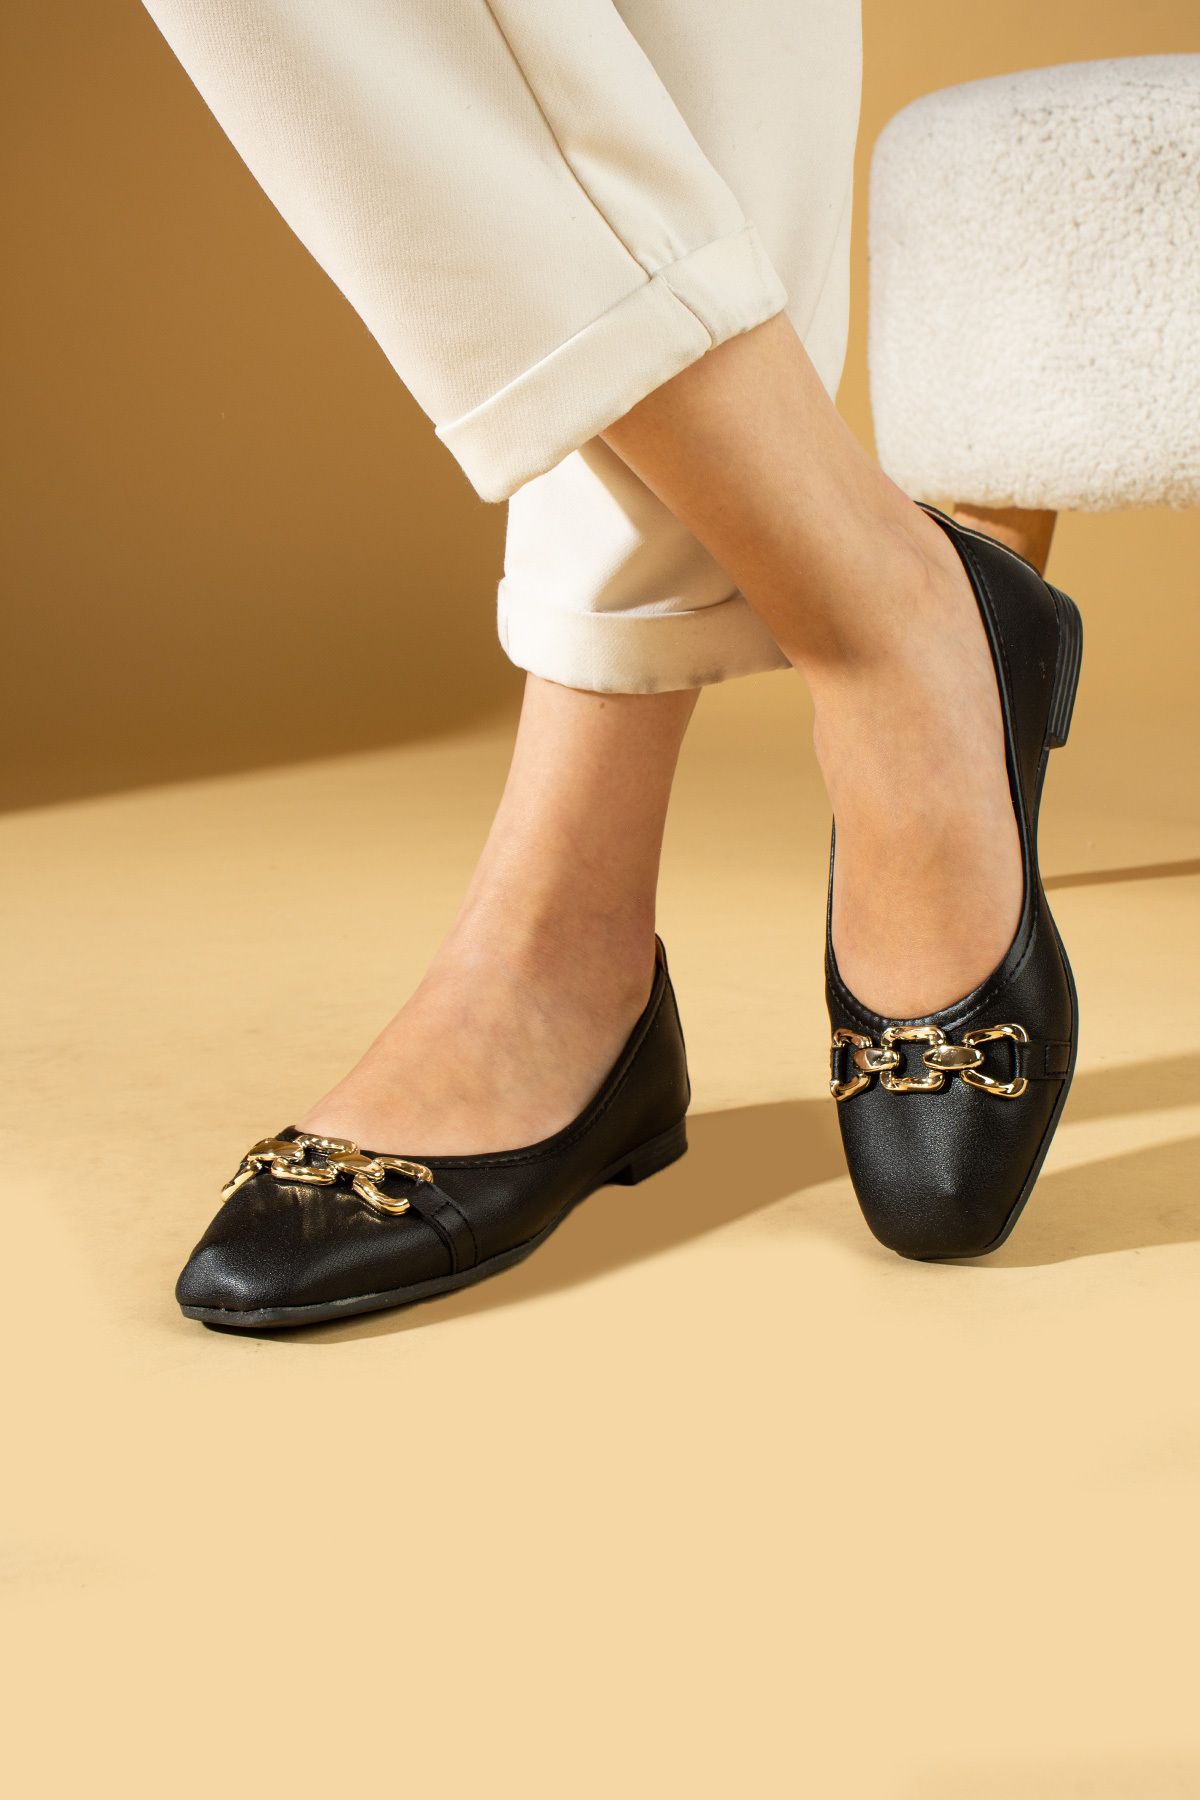 Pembe Potin Kadın Babet Siyah Tokalı Hafif Rahat Taban Şık Günlük Ayakkabı